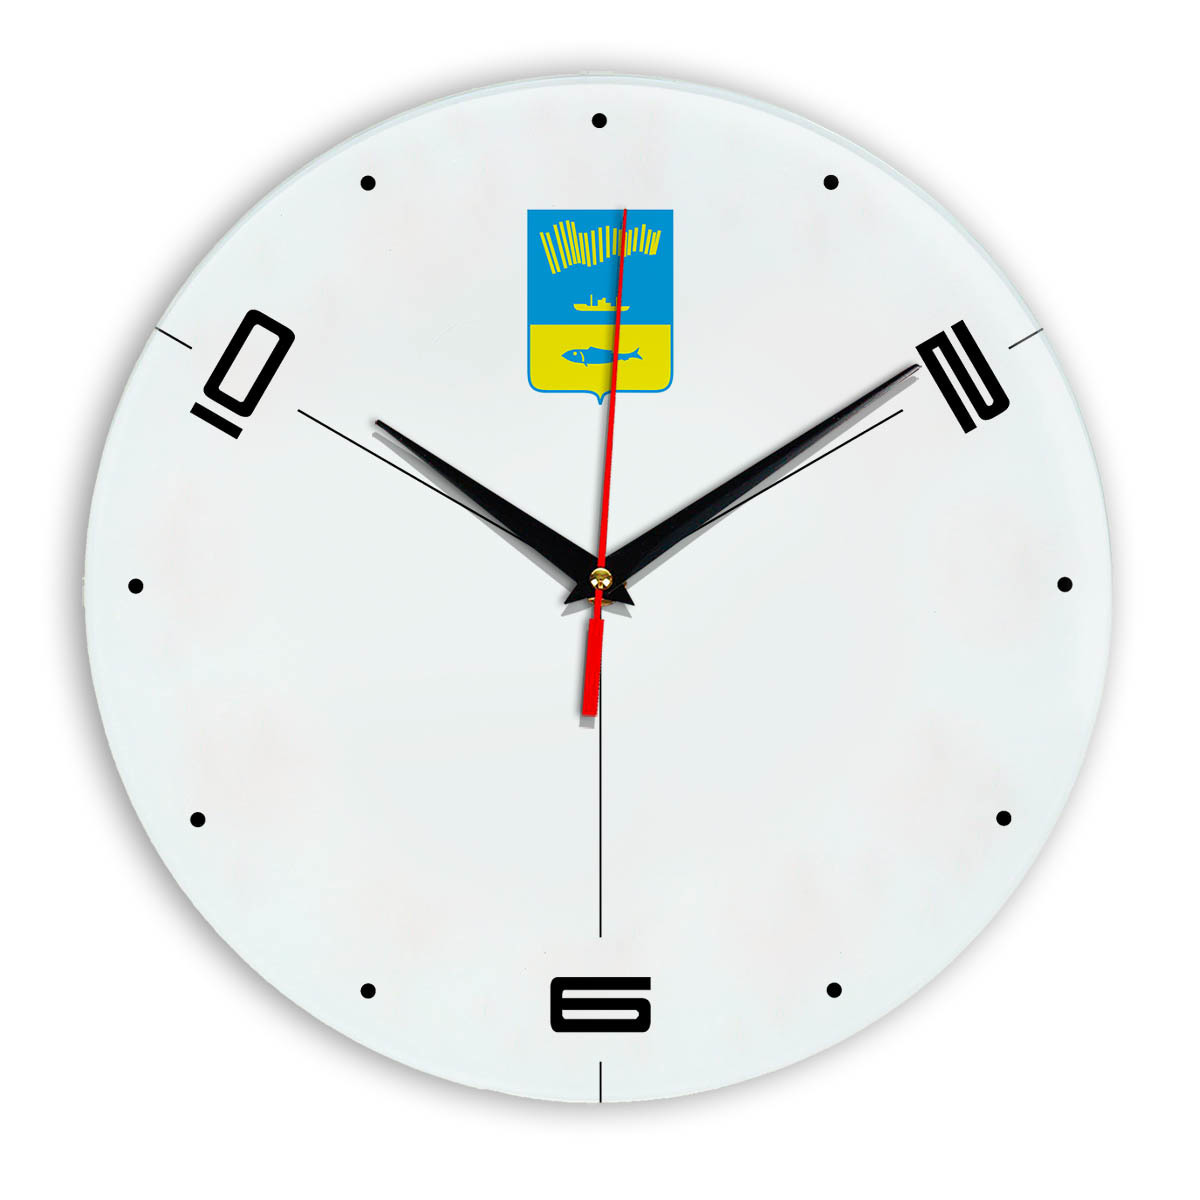 Магазин часы мурманск. Часы настенные Мурманск. Сувенирная продукция настенные часы Мурманск. Часы из Мурманска. Машина времени Мурманск часы.